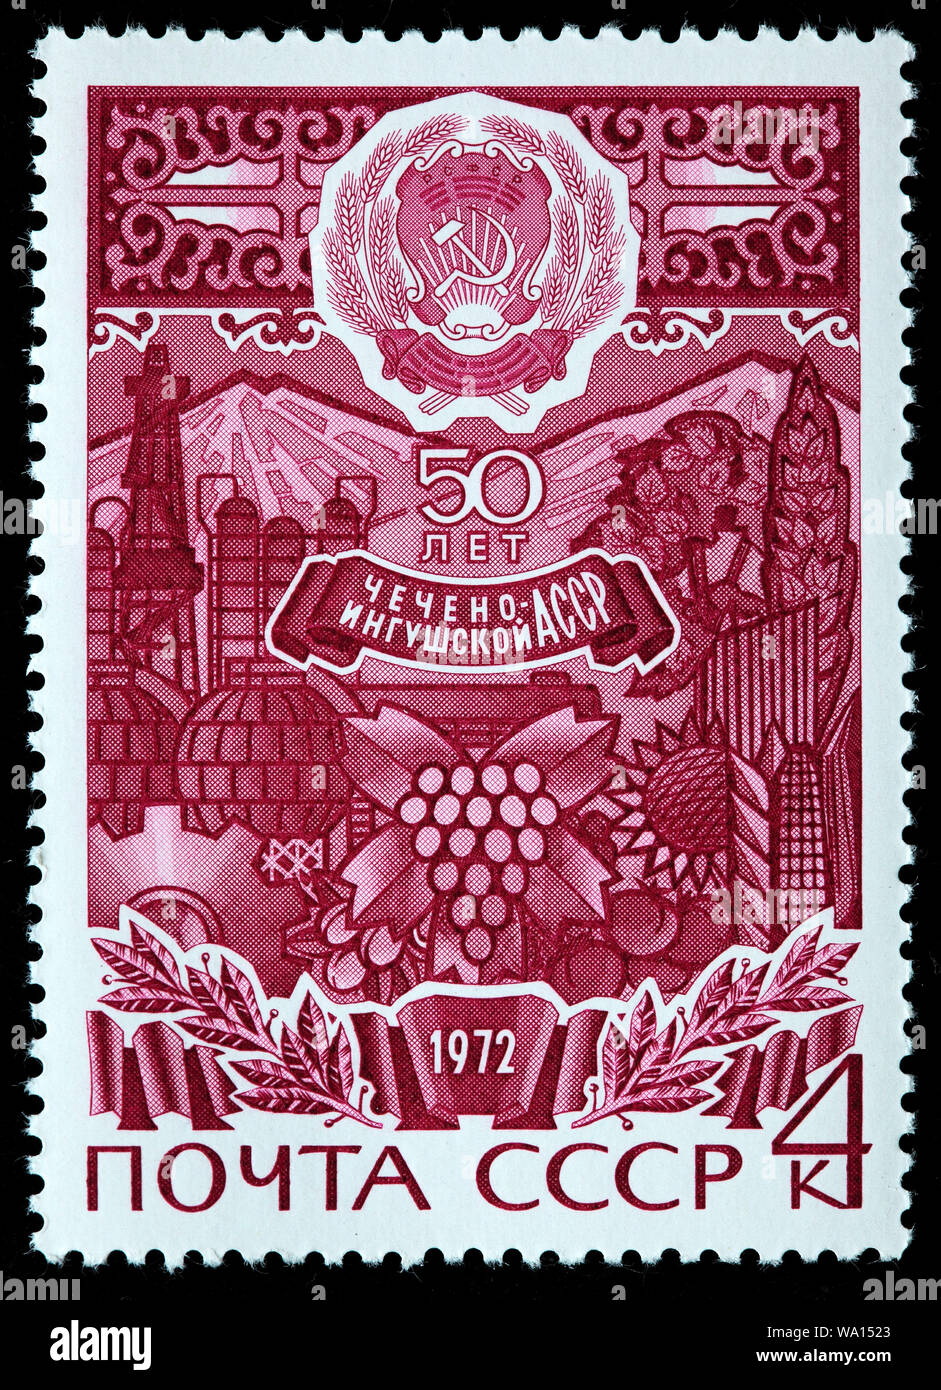 50. Jahrestag der Checheno-Ingush autonomen SSR, Tschetschenien, Republik Tschetschenien, Inguschetien, Briefmarke, Russland, UDSSR, 1972 Stockfoto